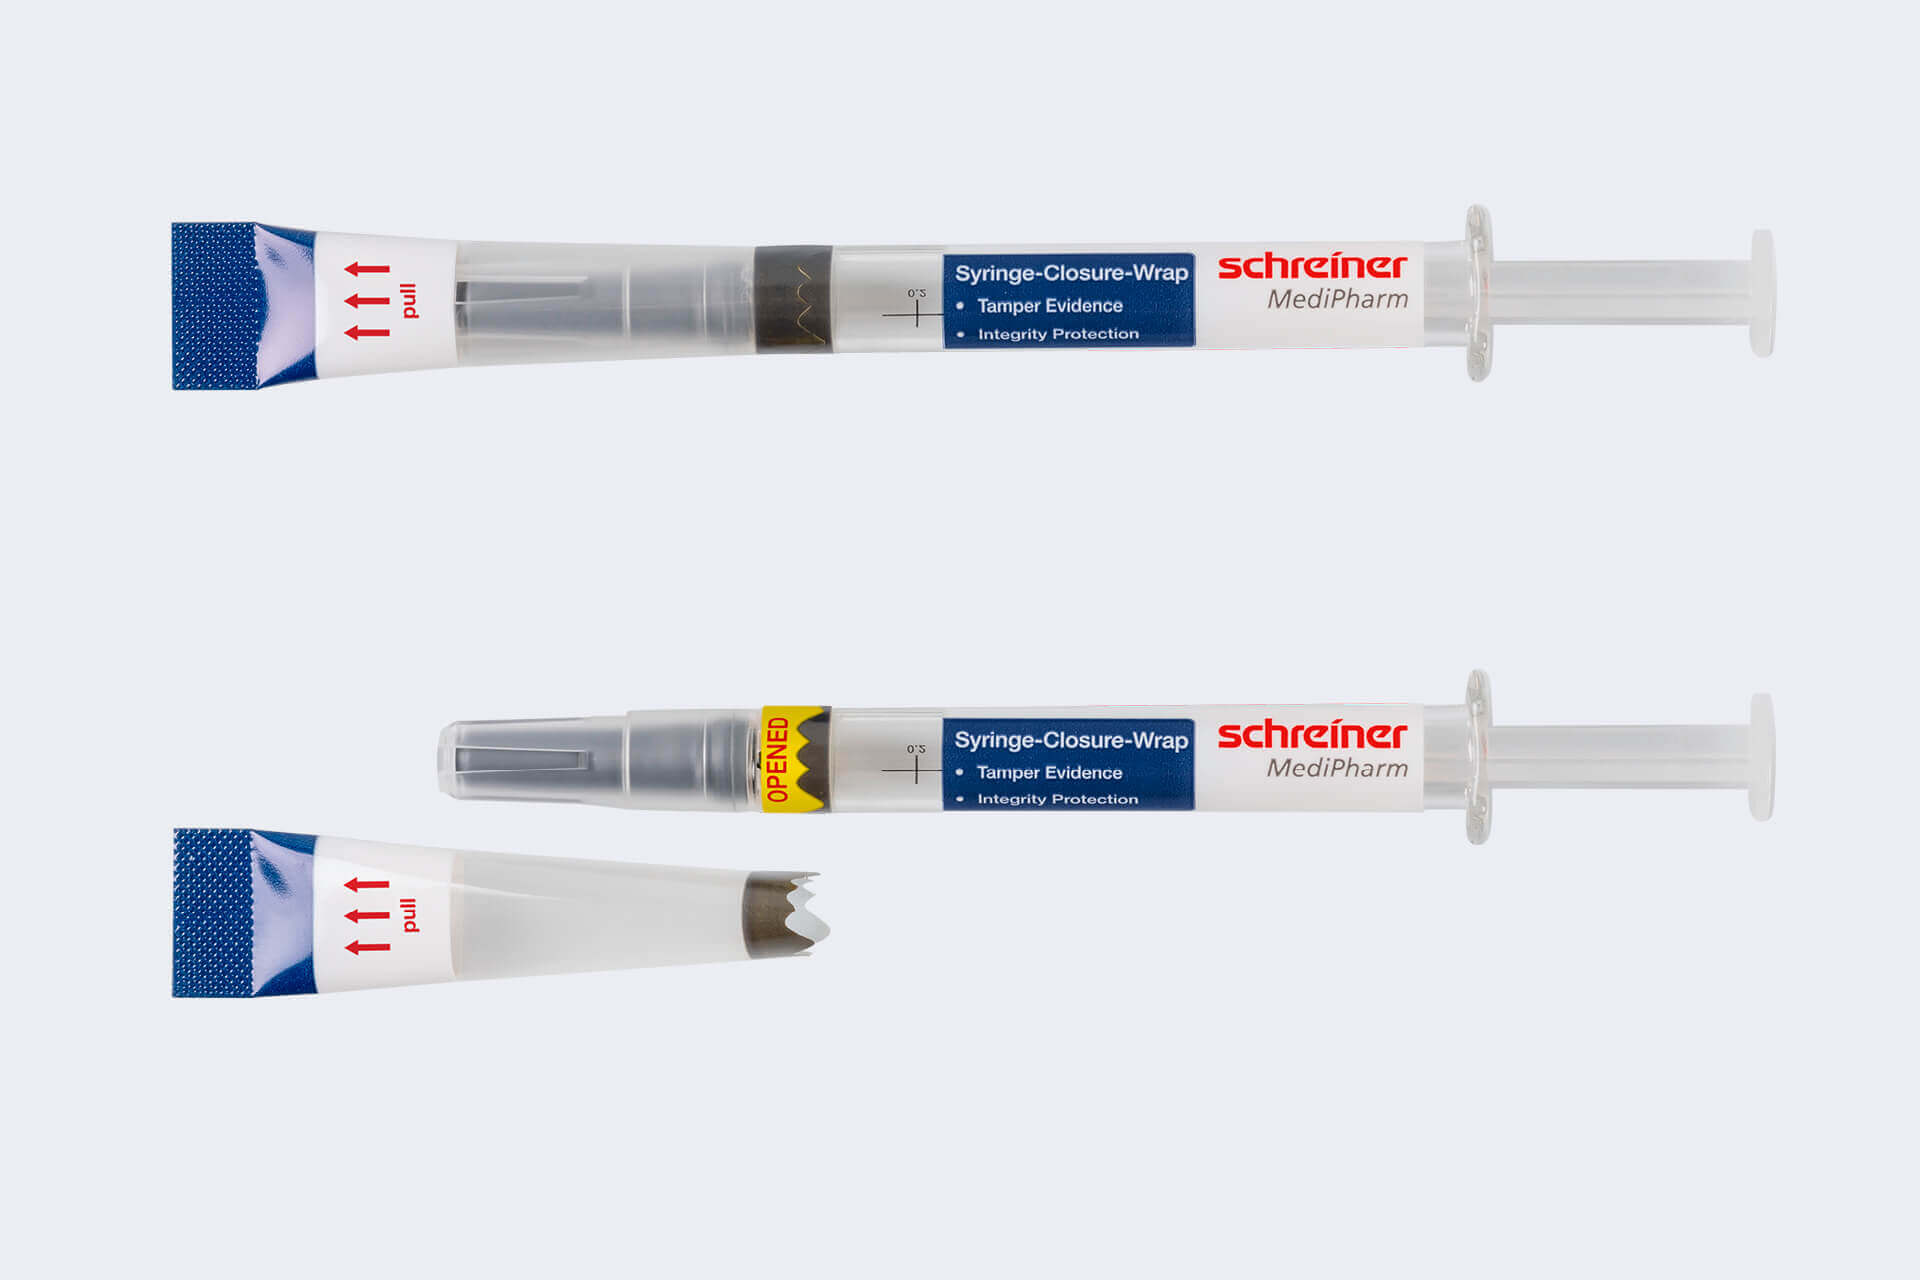 Syringe-Closure-Wrap schützt die Integrität der Spritze und zeigt deren Erstöffnung irreversibel an.